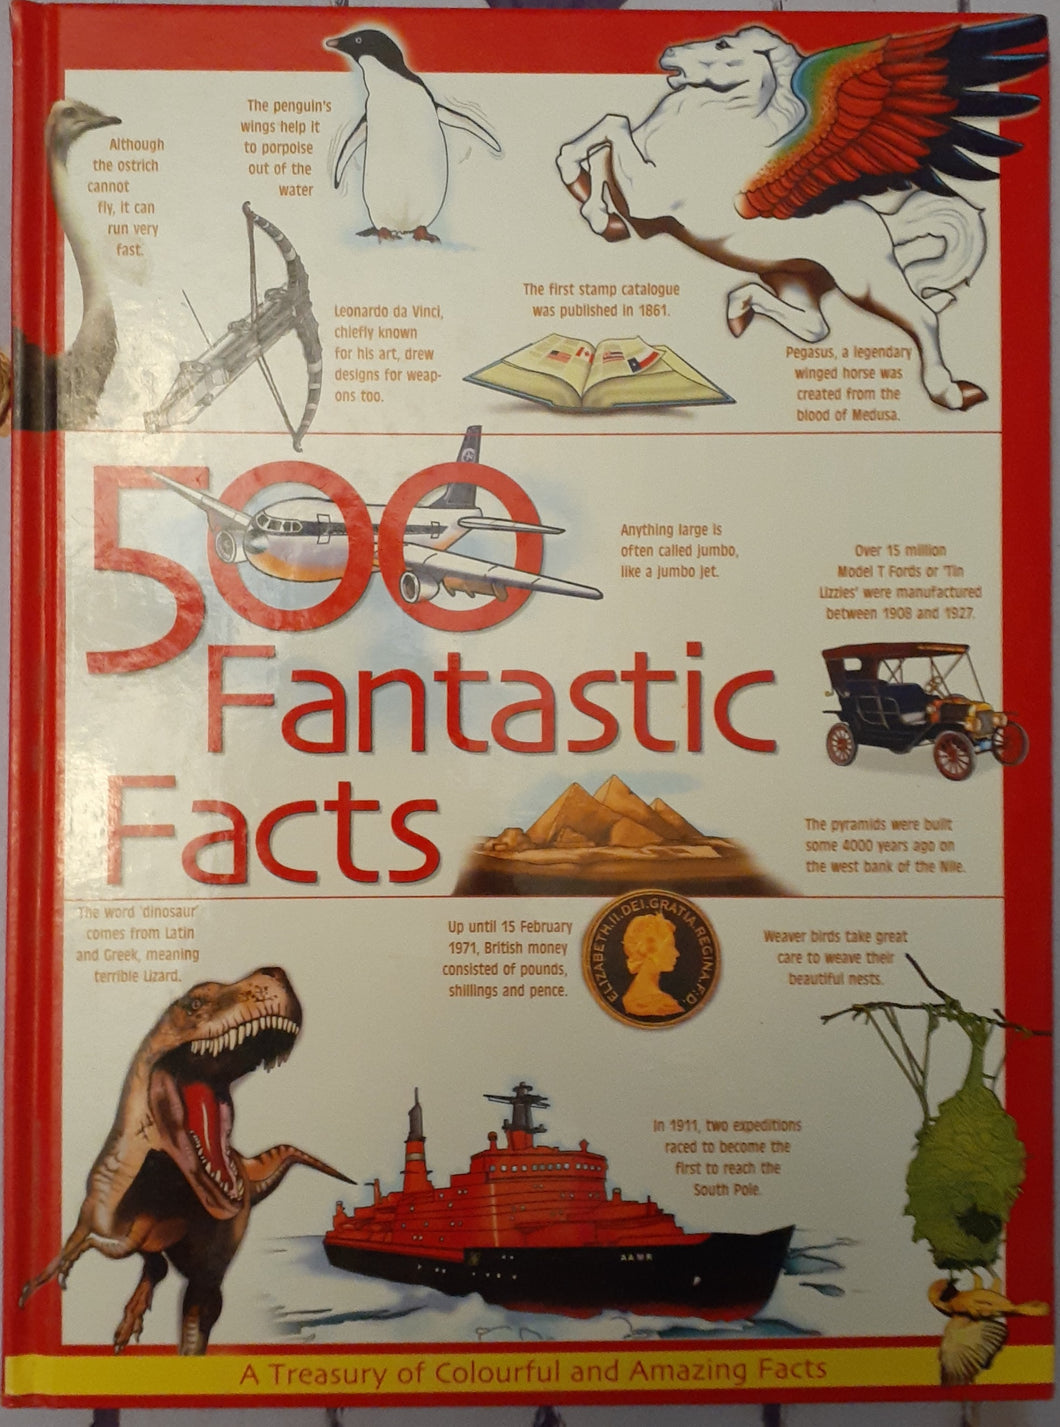 500 Fantastic Facts